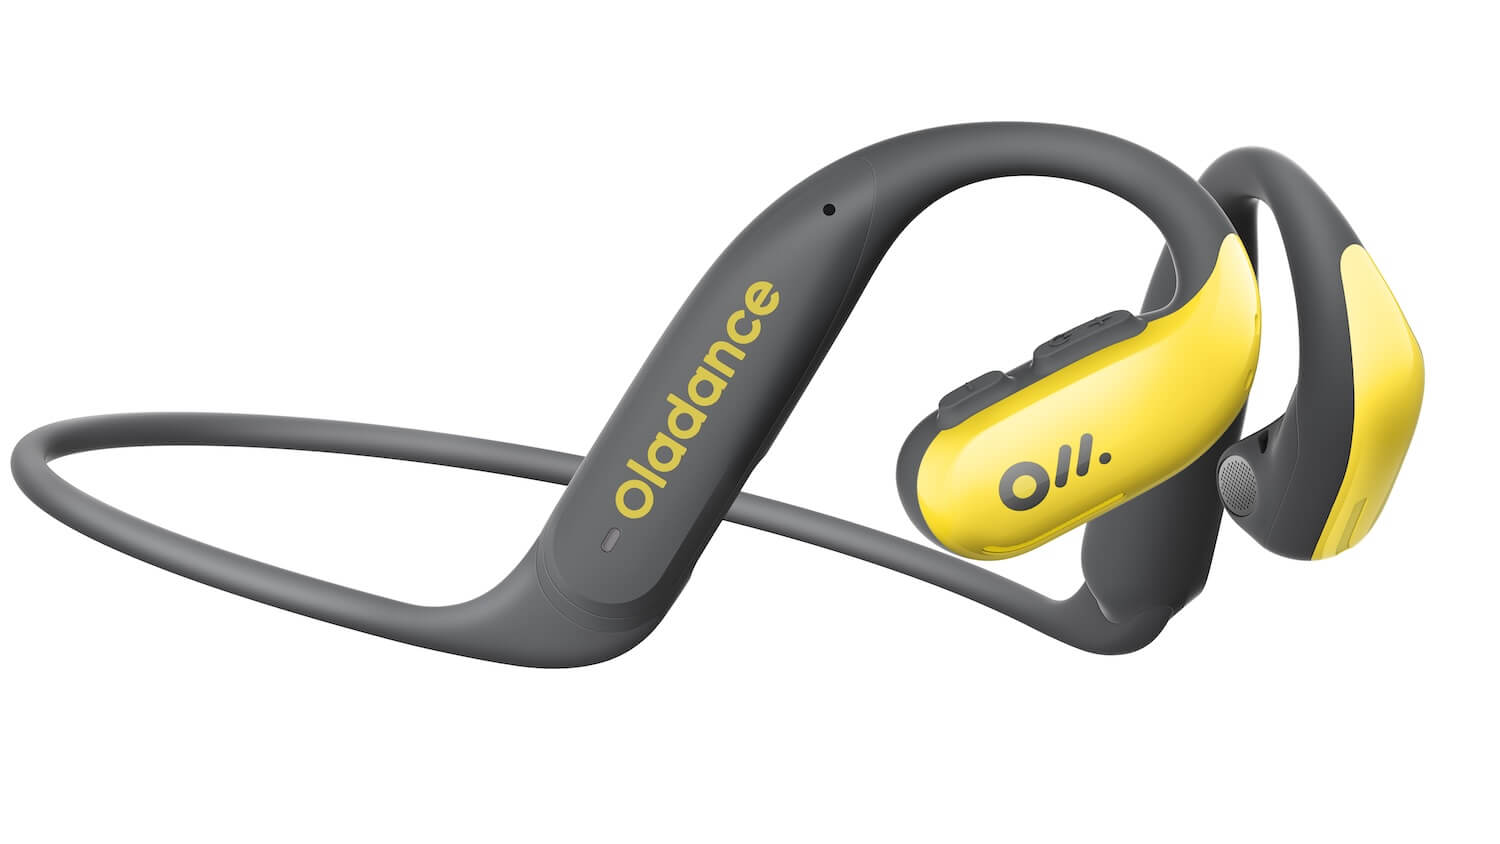 Oladance headphones